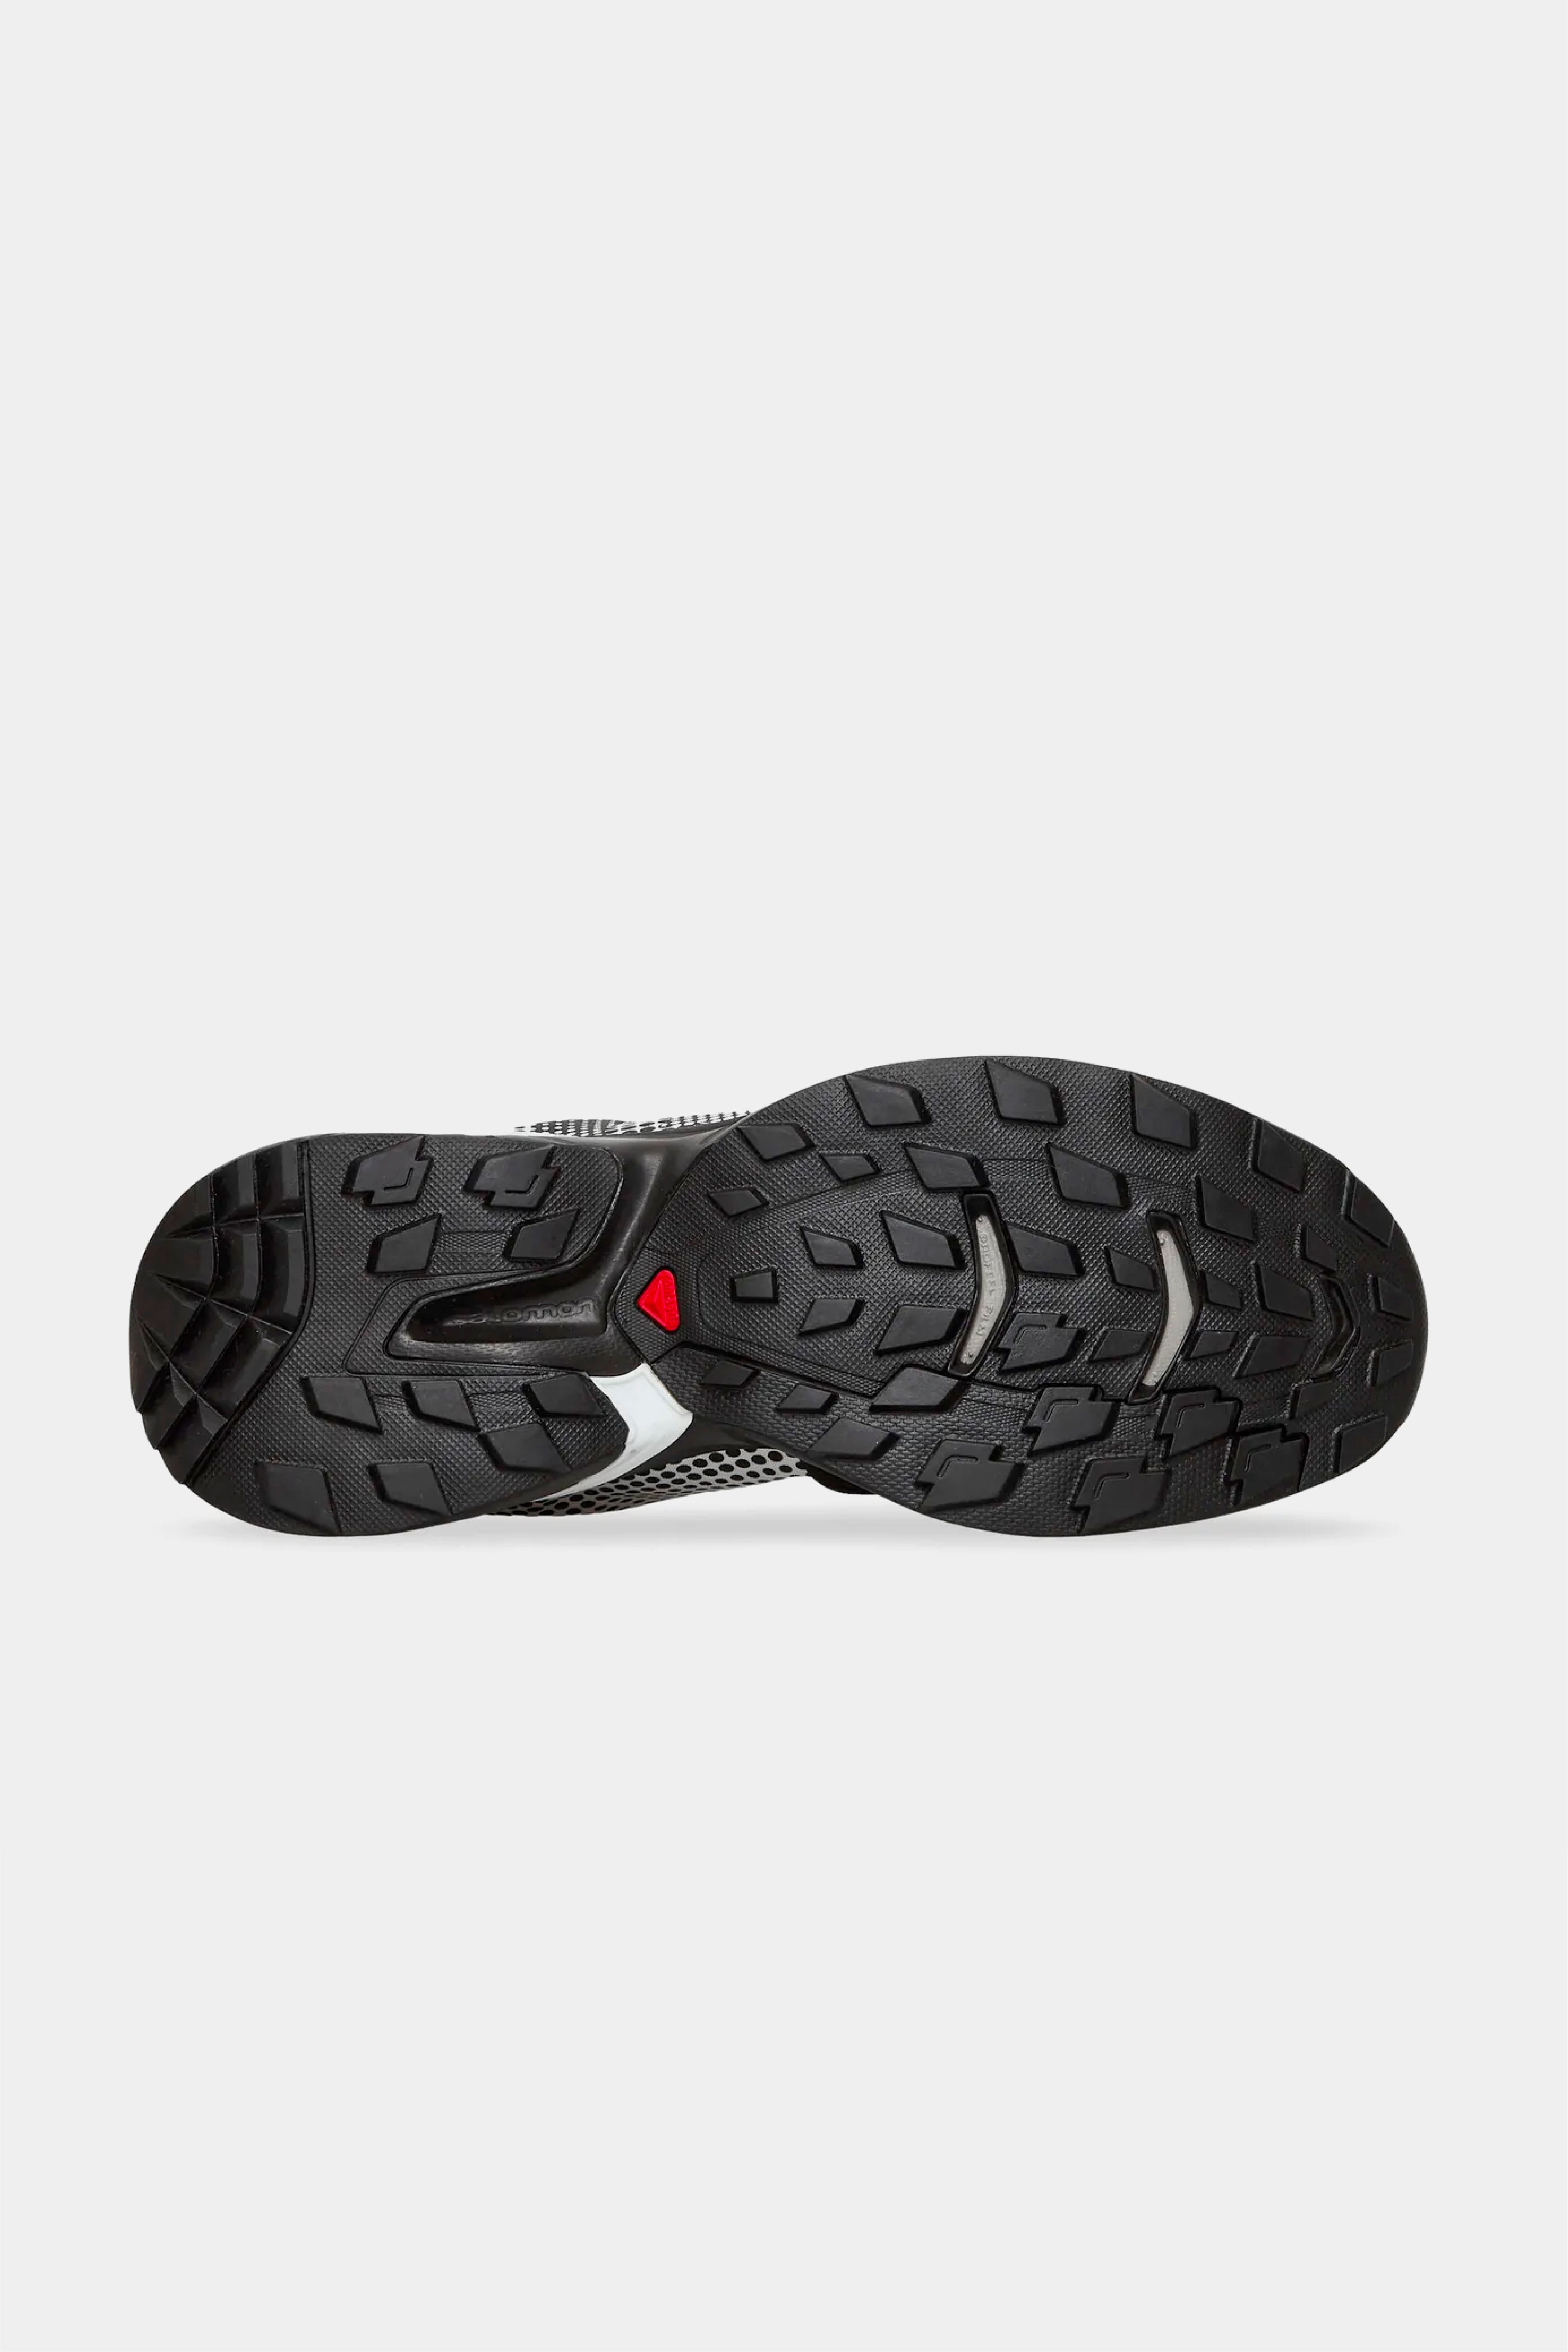 Selectshop FRAME - COMME DES GARÇONS Comme des Garçons x Salomon SR901E Footwear Concept Store Dubai